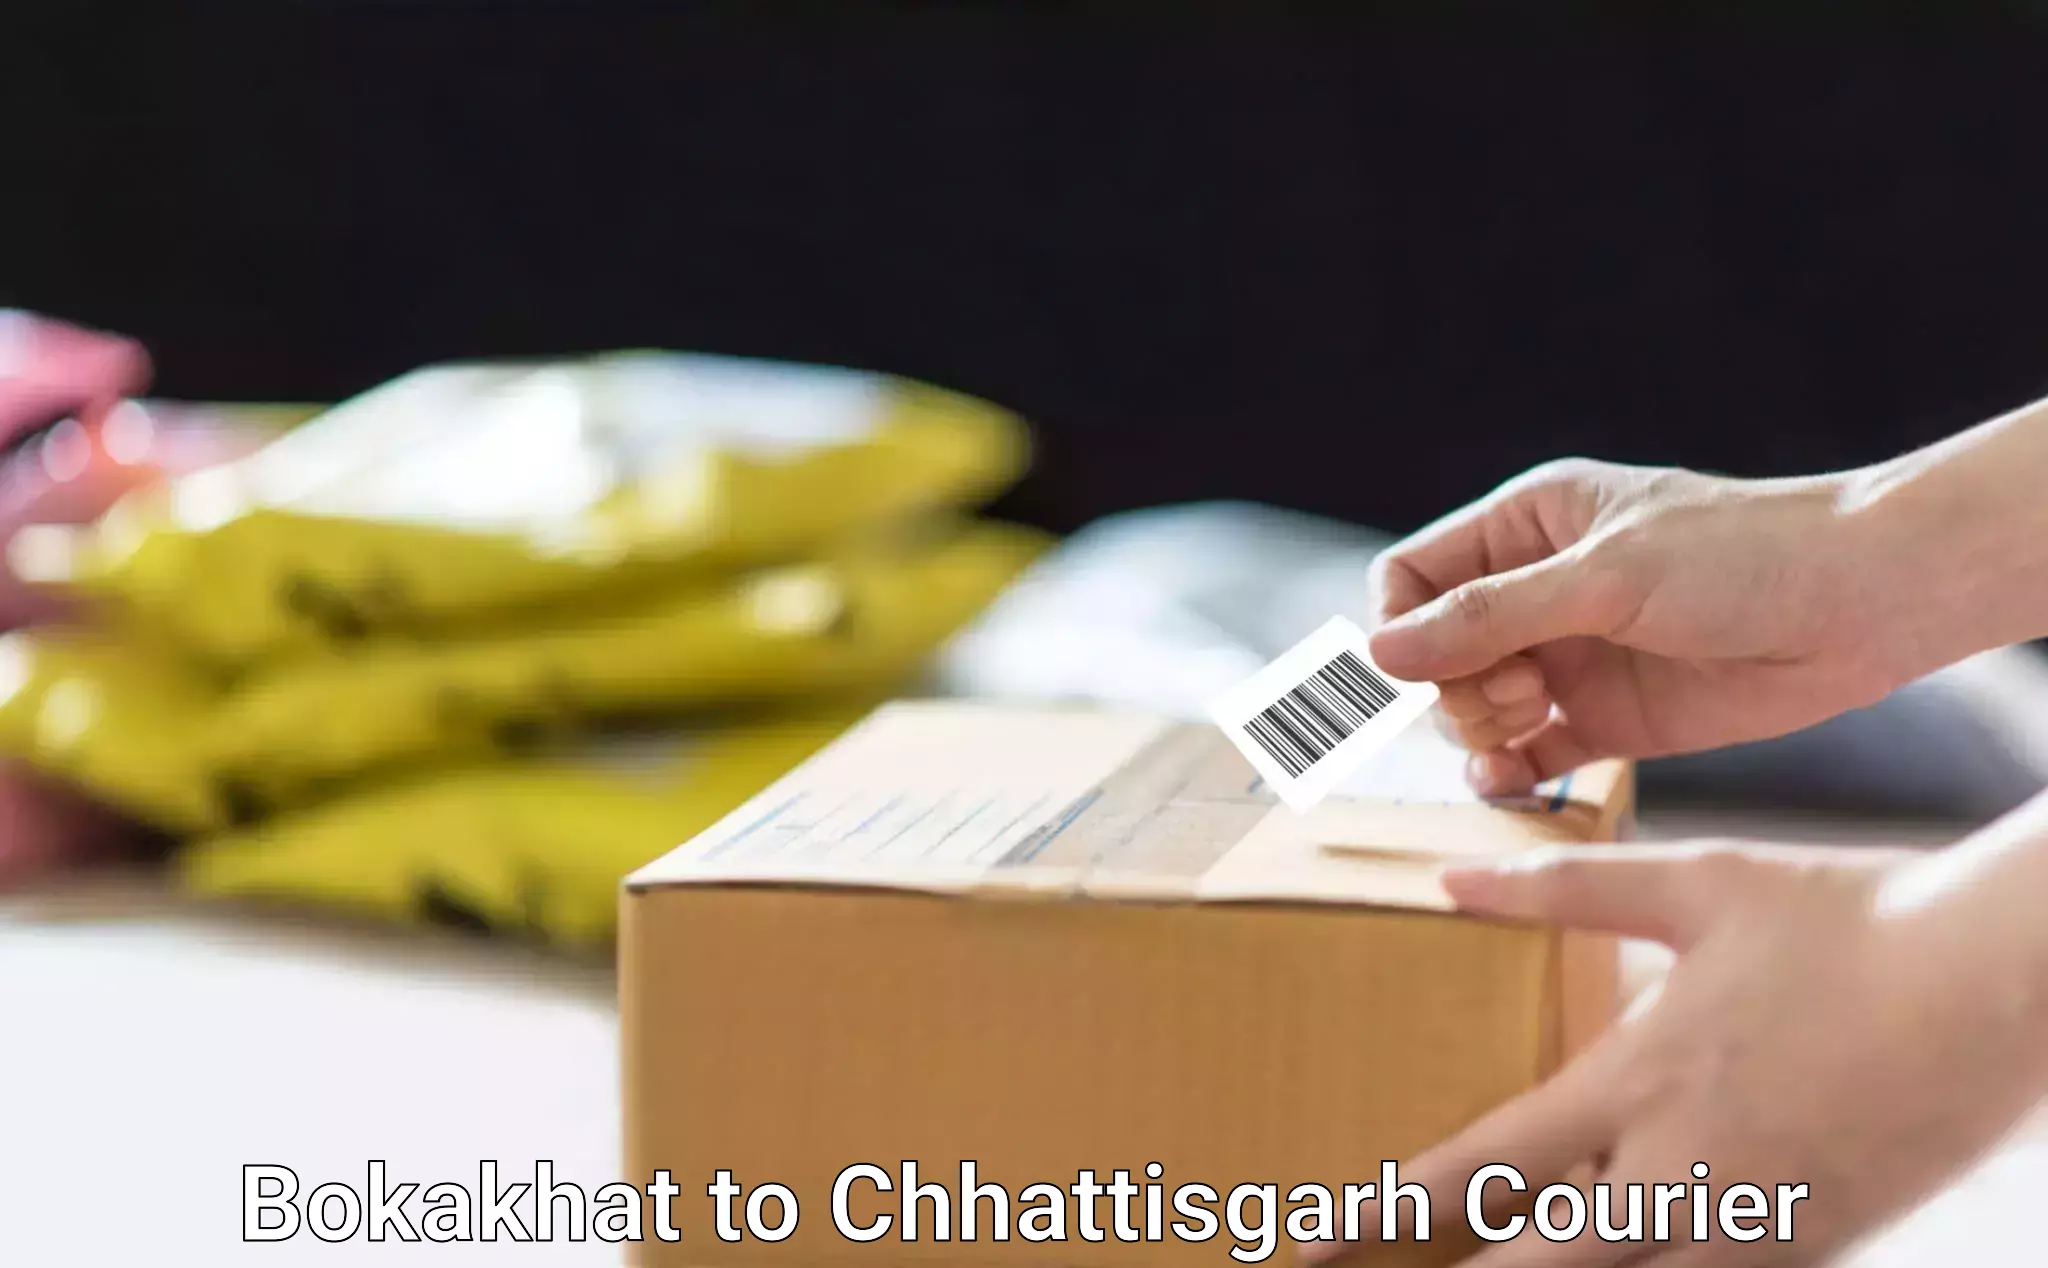 Bulk order courier Bokakhat to Chhattisgarh